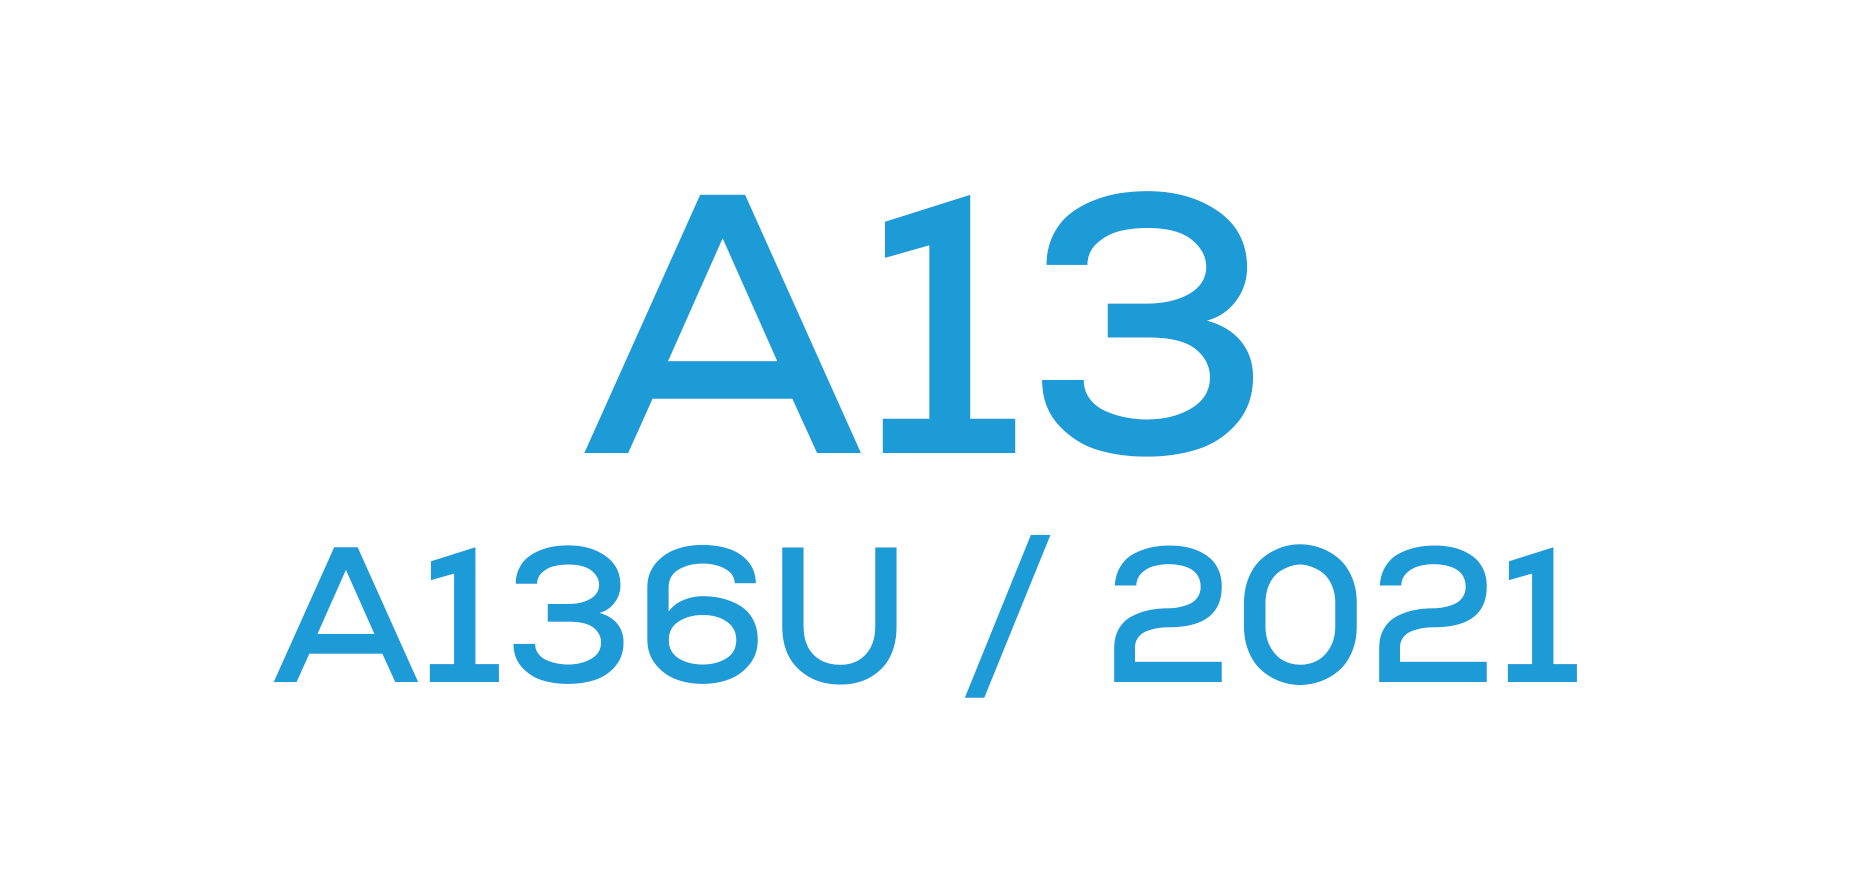 A13 5G (A136U / 2021)